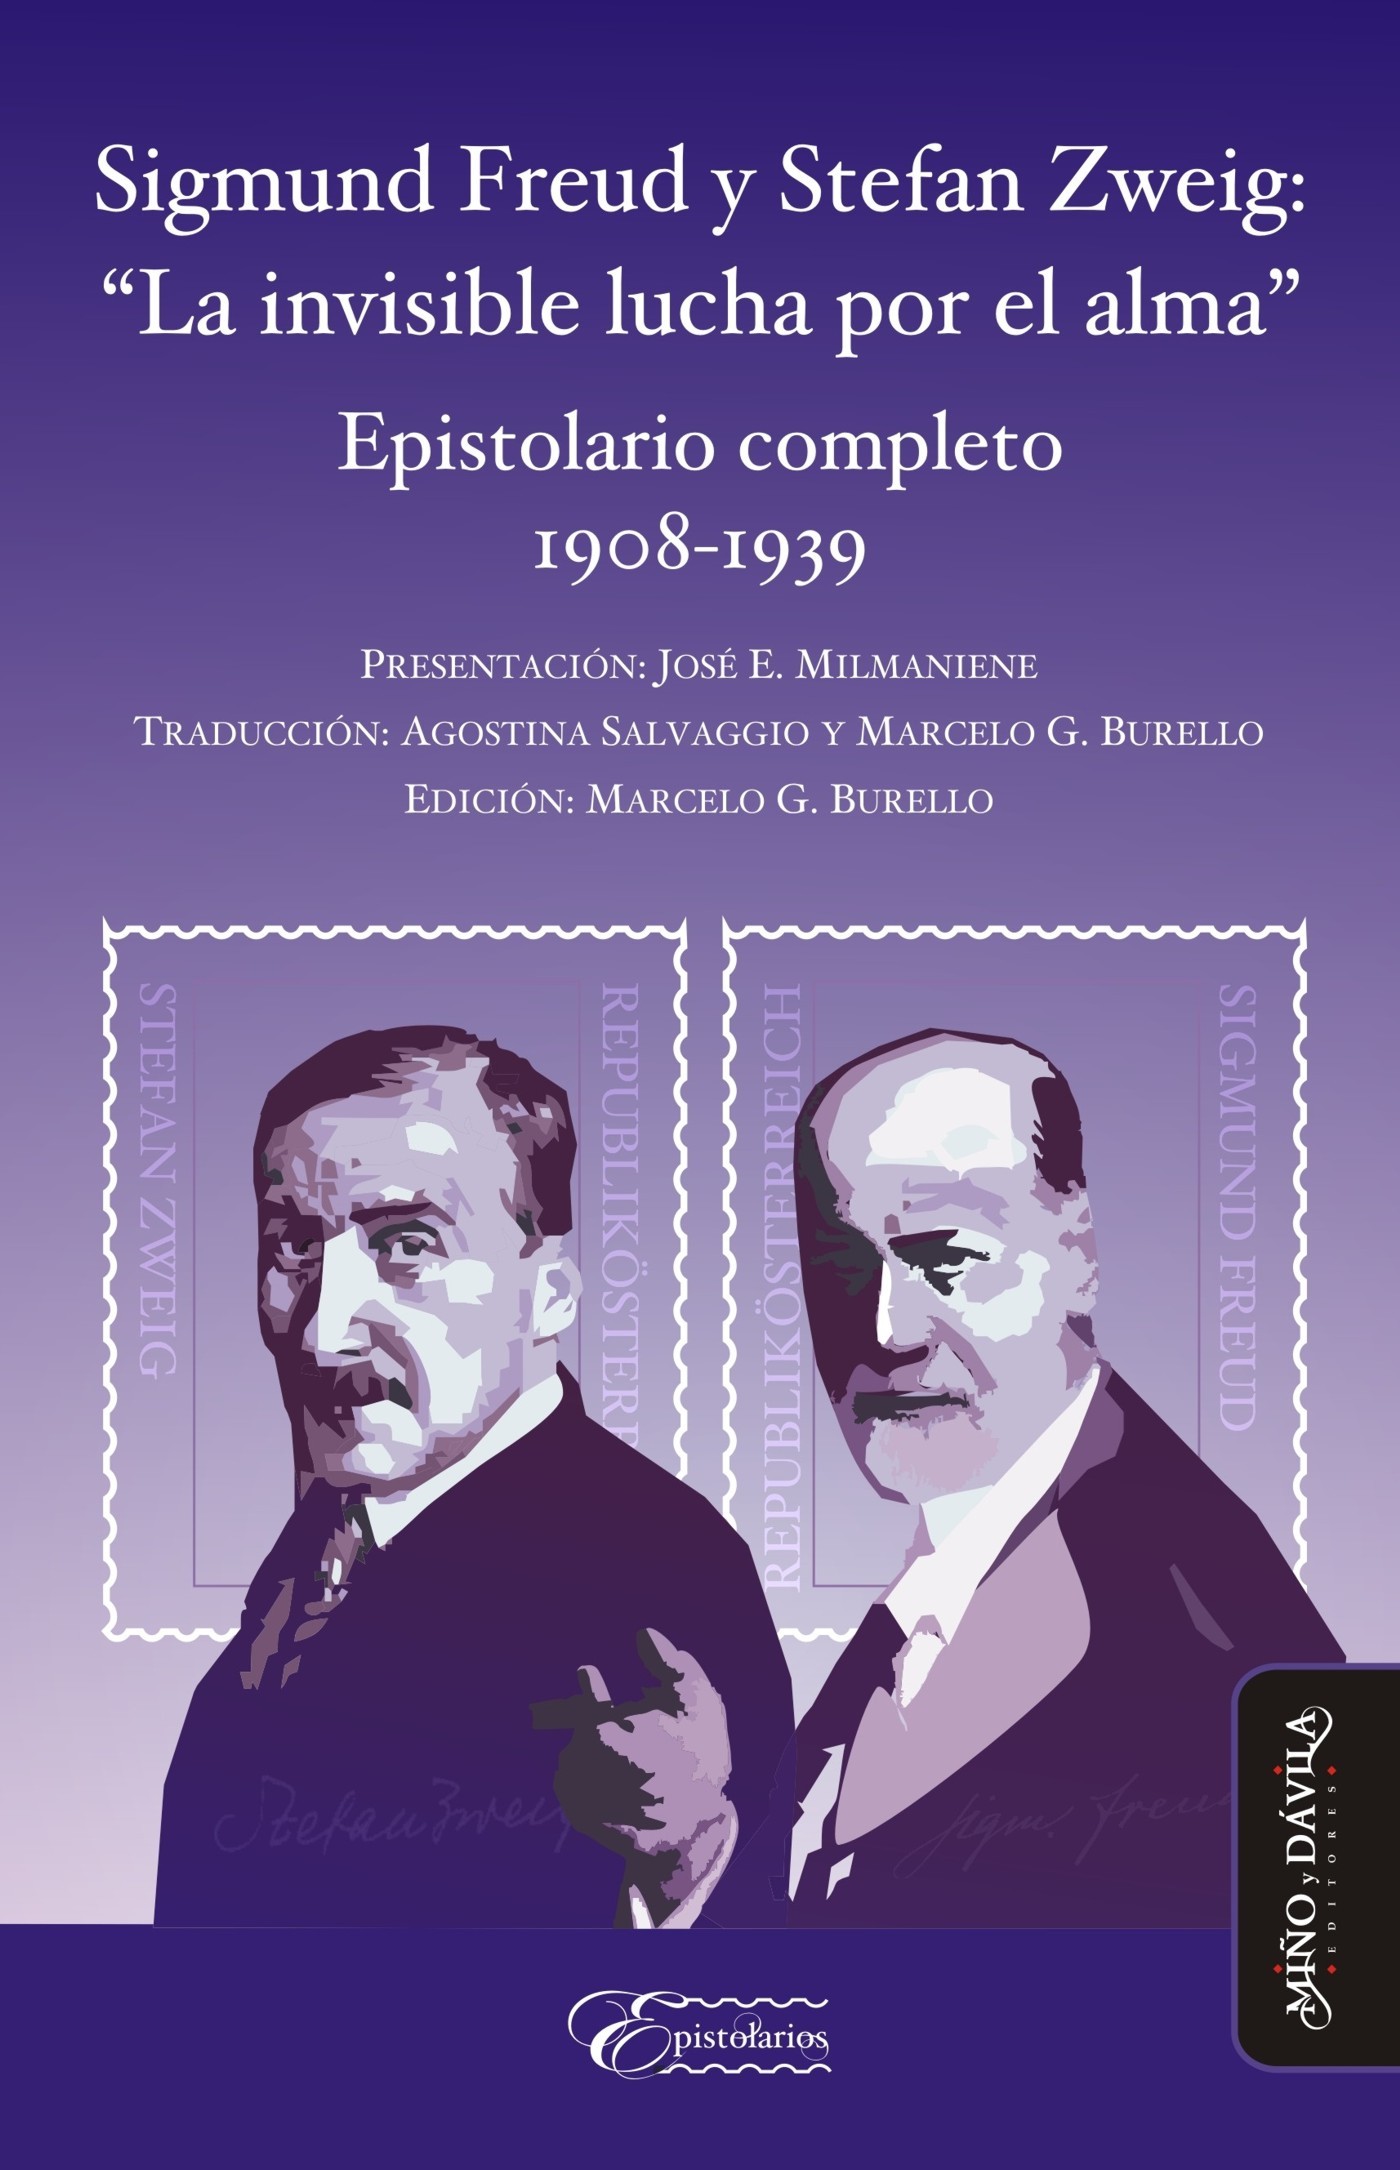 Sigmund Freud y Stefan Zweig: "La invisible lucha por el alma"